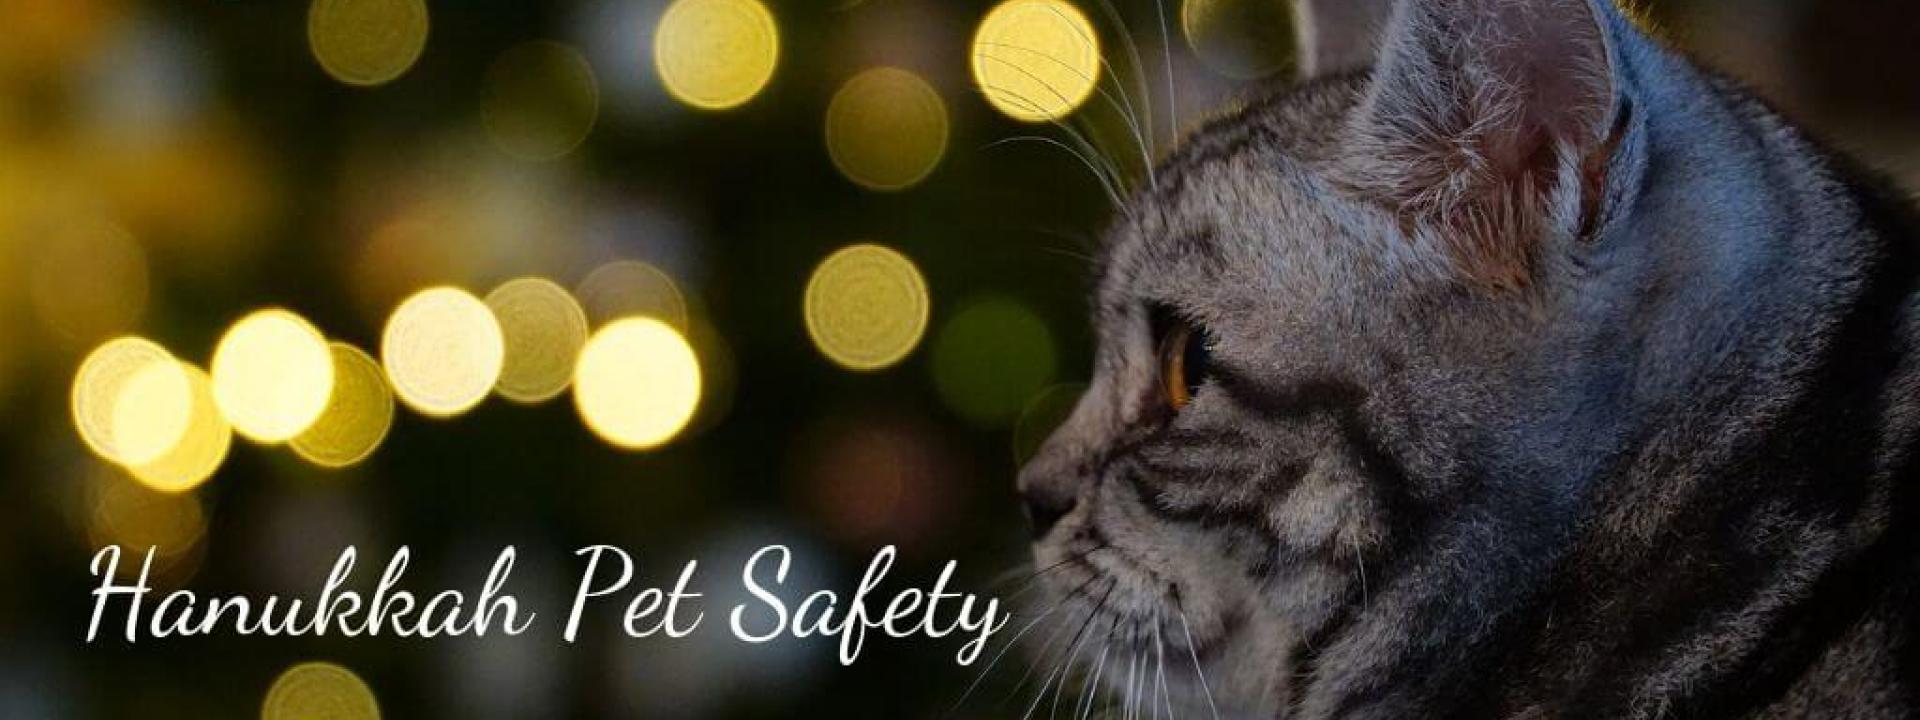 hanukkah-pet-safety-blog-header.jpg